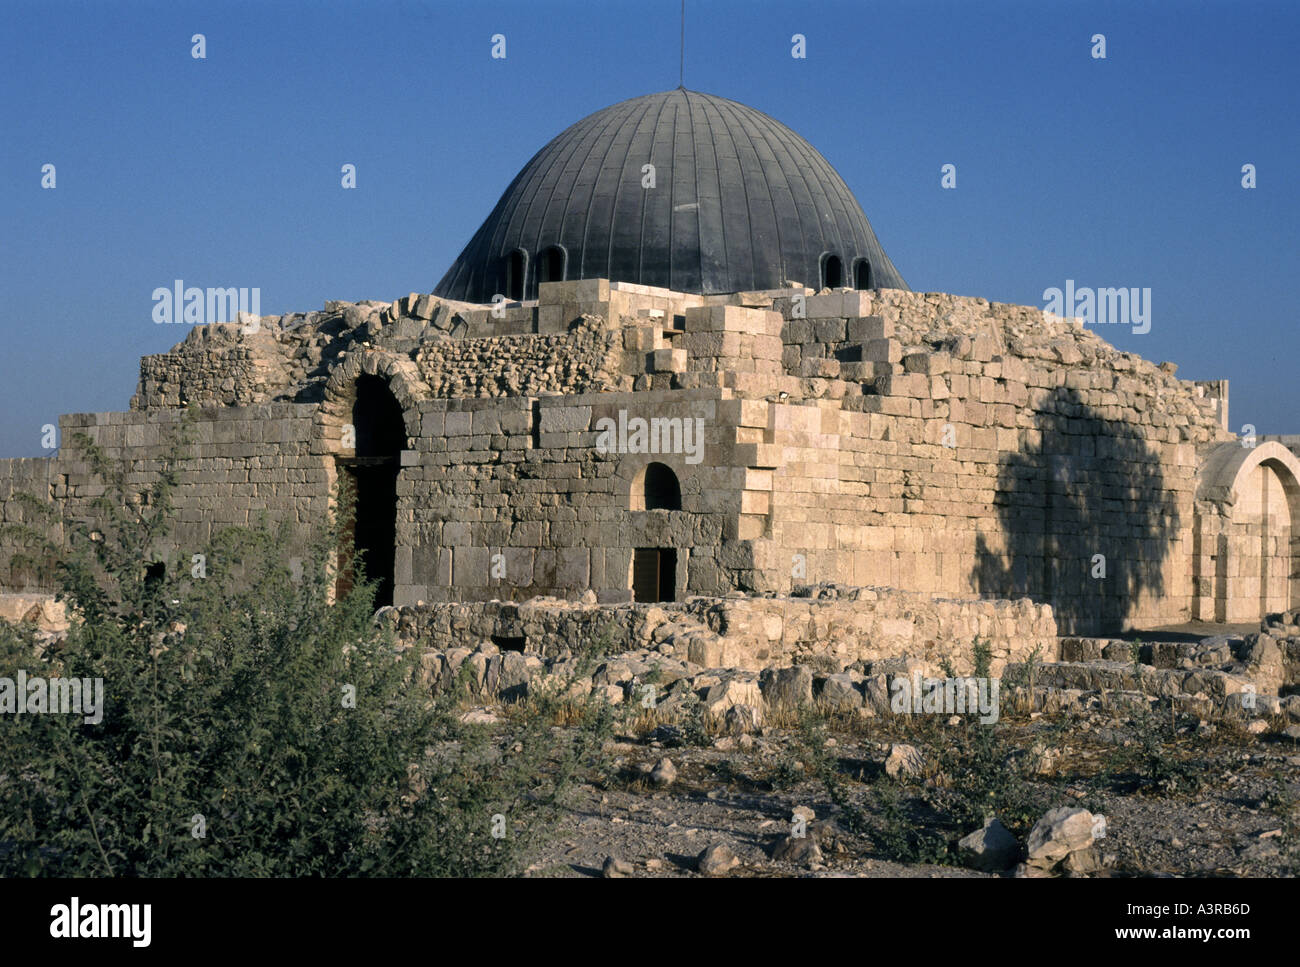 Forteresse omeyyade reconstruit avec toit dôme de plomb forteresse connue sous le nom de citadelle sur Amman Jordanie mountaintop Banque D'Images